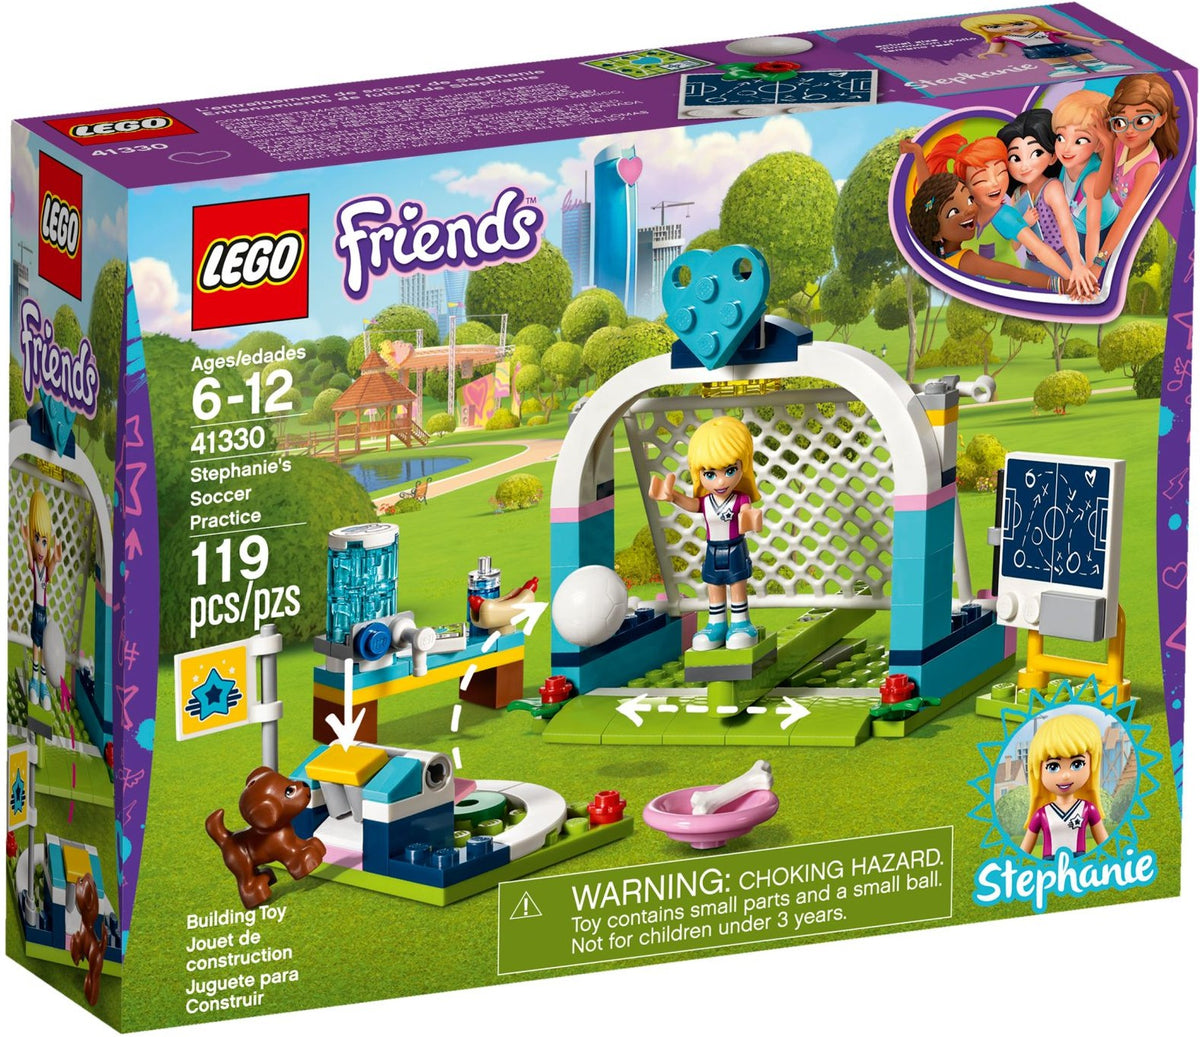 Fußballtraining Toymigo Friends LEGO mit 41330 - Stephanie